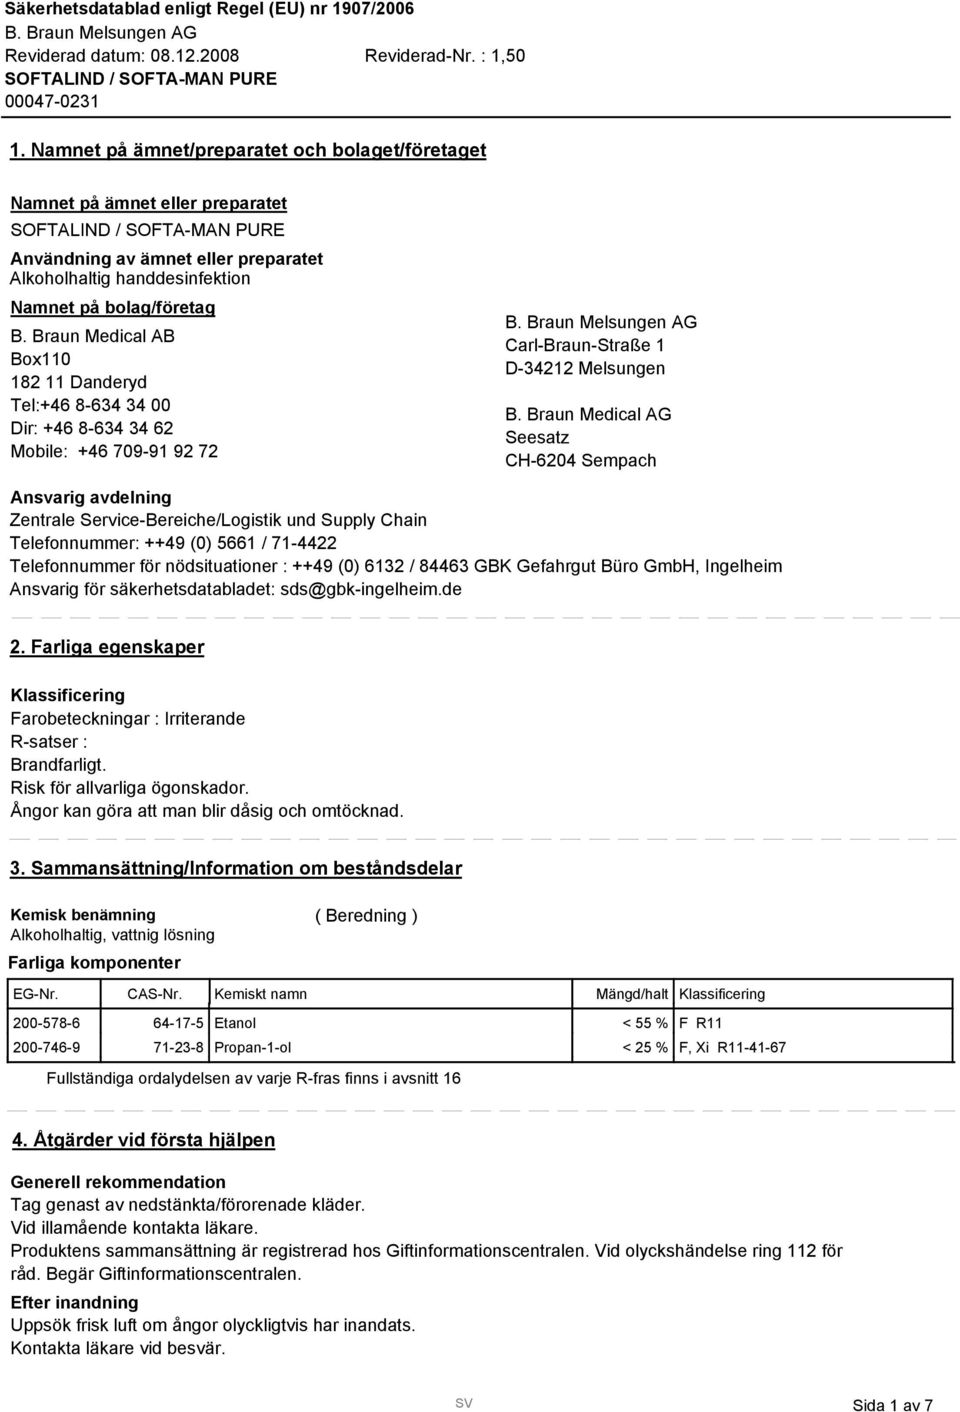 Braun Medical AG Seesatz CH-6204 Sempach Ansvarig avdelning Zentrale Service-Bereiche/Logistik und Supply Chain Telefonnummer: ++49 (0) 5661 / 71-4422 Telefonnummer för nödsituationer : ++49 (0) 612